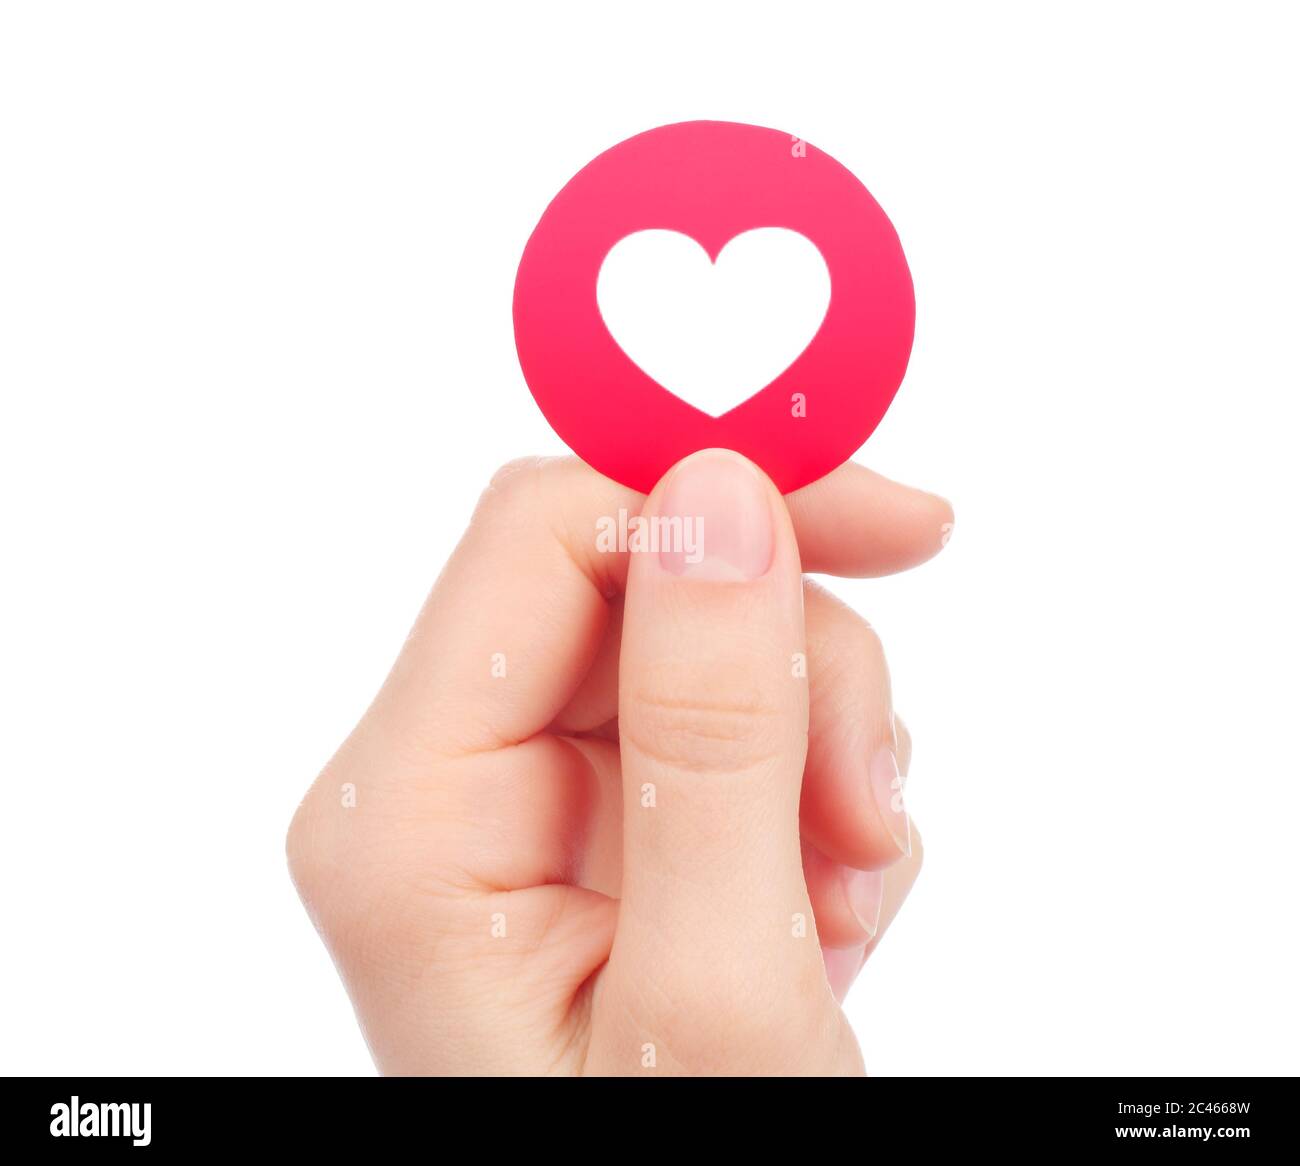 Kiew, Ukraine - 15. Mai 2019: Hand hält neue Facebook Love empathische Emoji-Reaktion, gedruckt auf Papier. Facebook ist ein bekannter Social-Networking-Anbieter Stockfoto